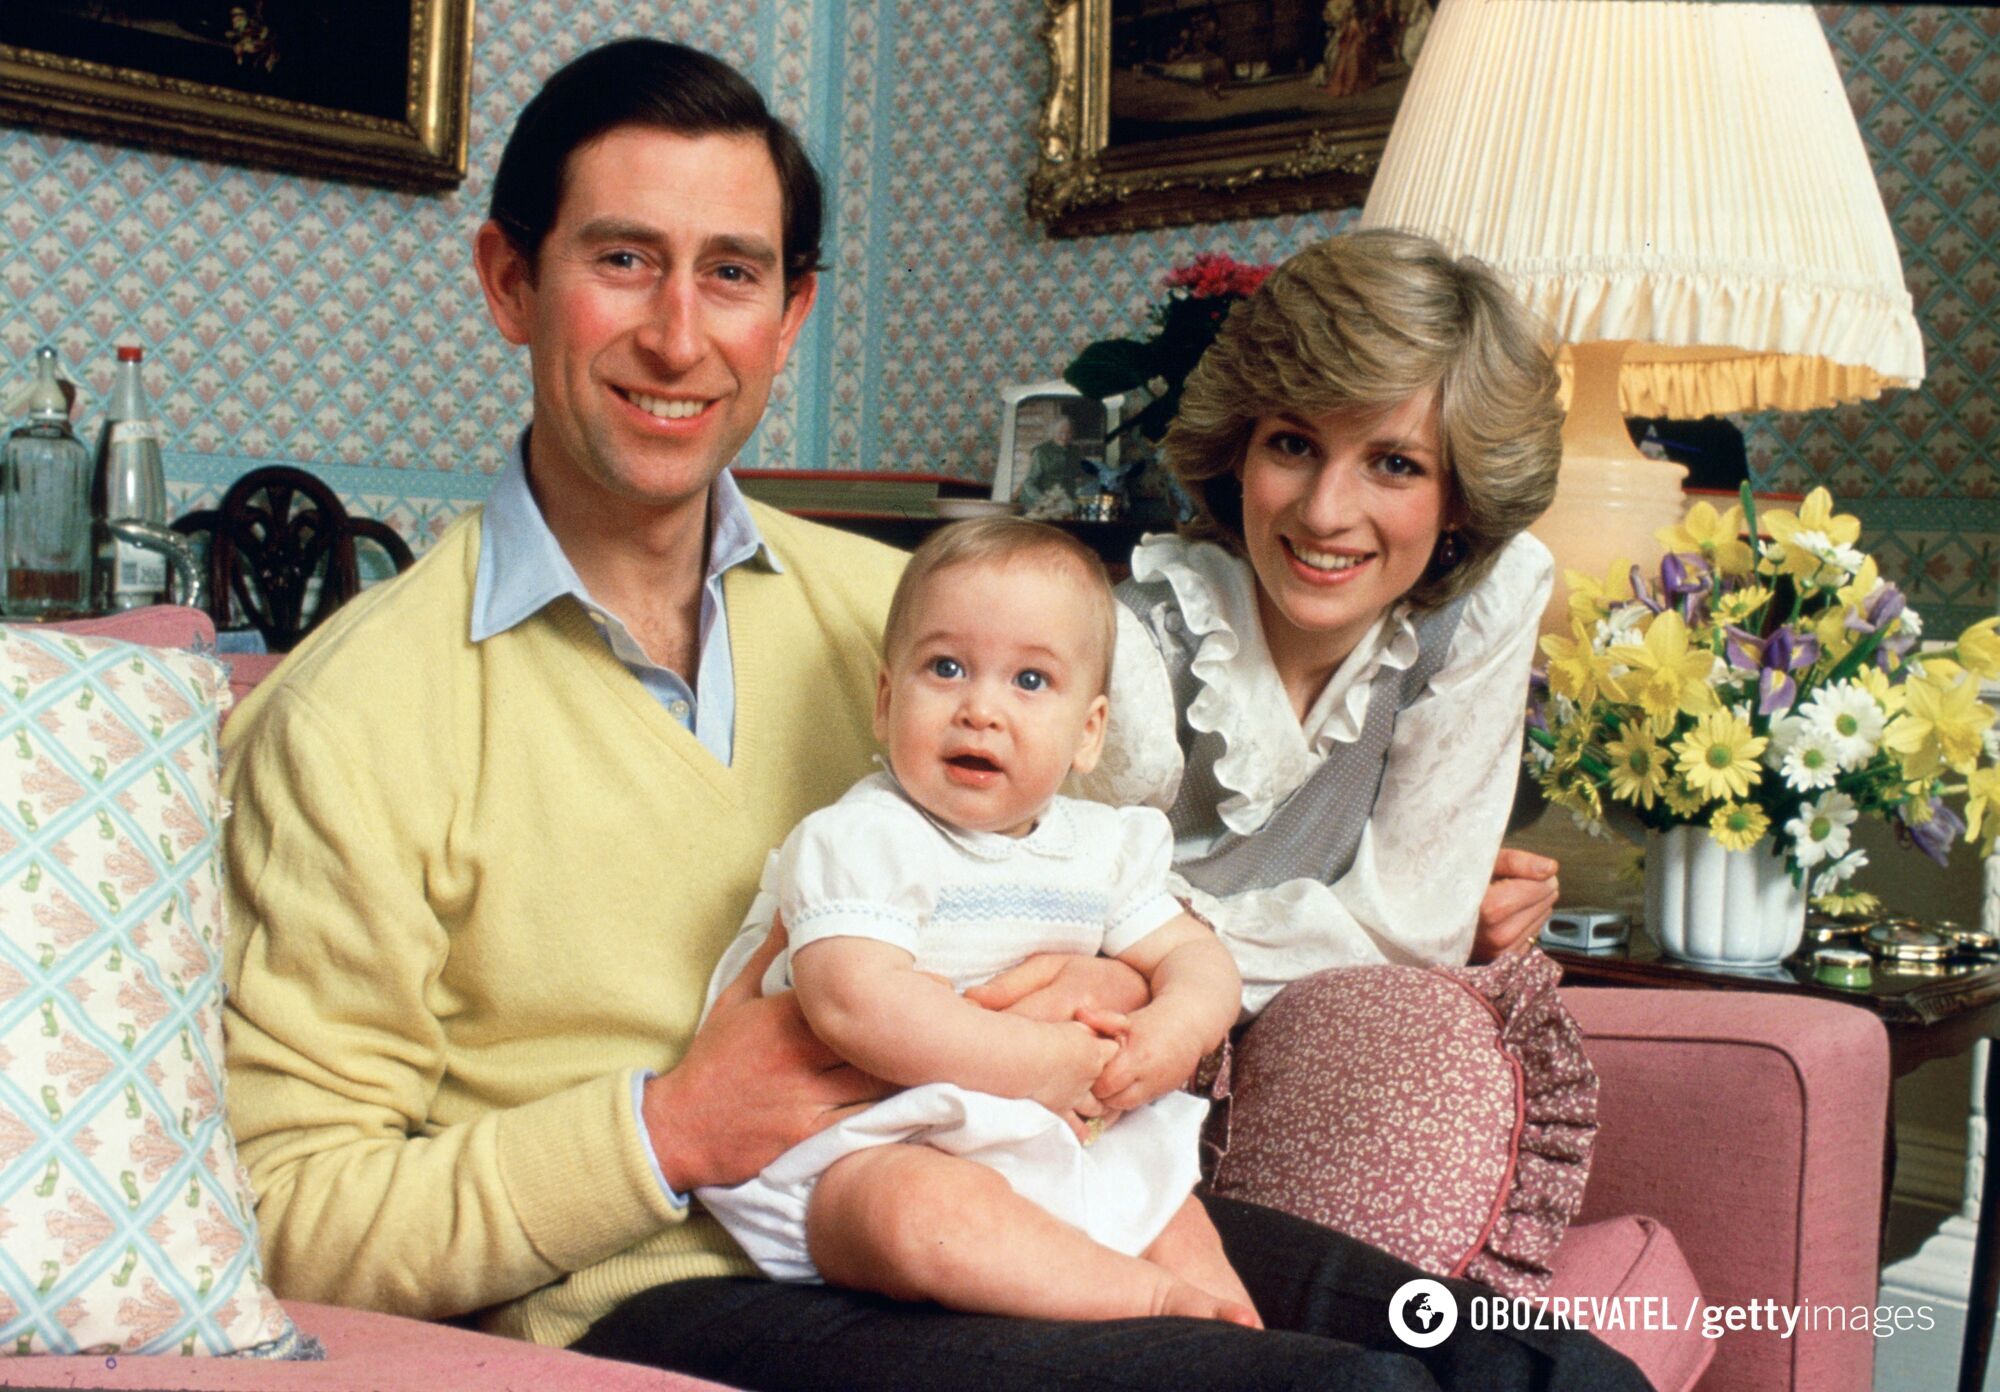 Rodzina królewska wzruszająco pogratulowała księciu Williamowi urodzin i pokazała go jako dziecko